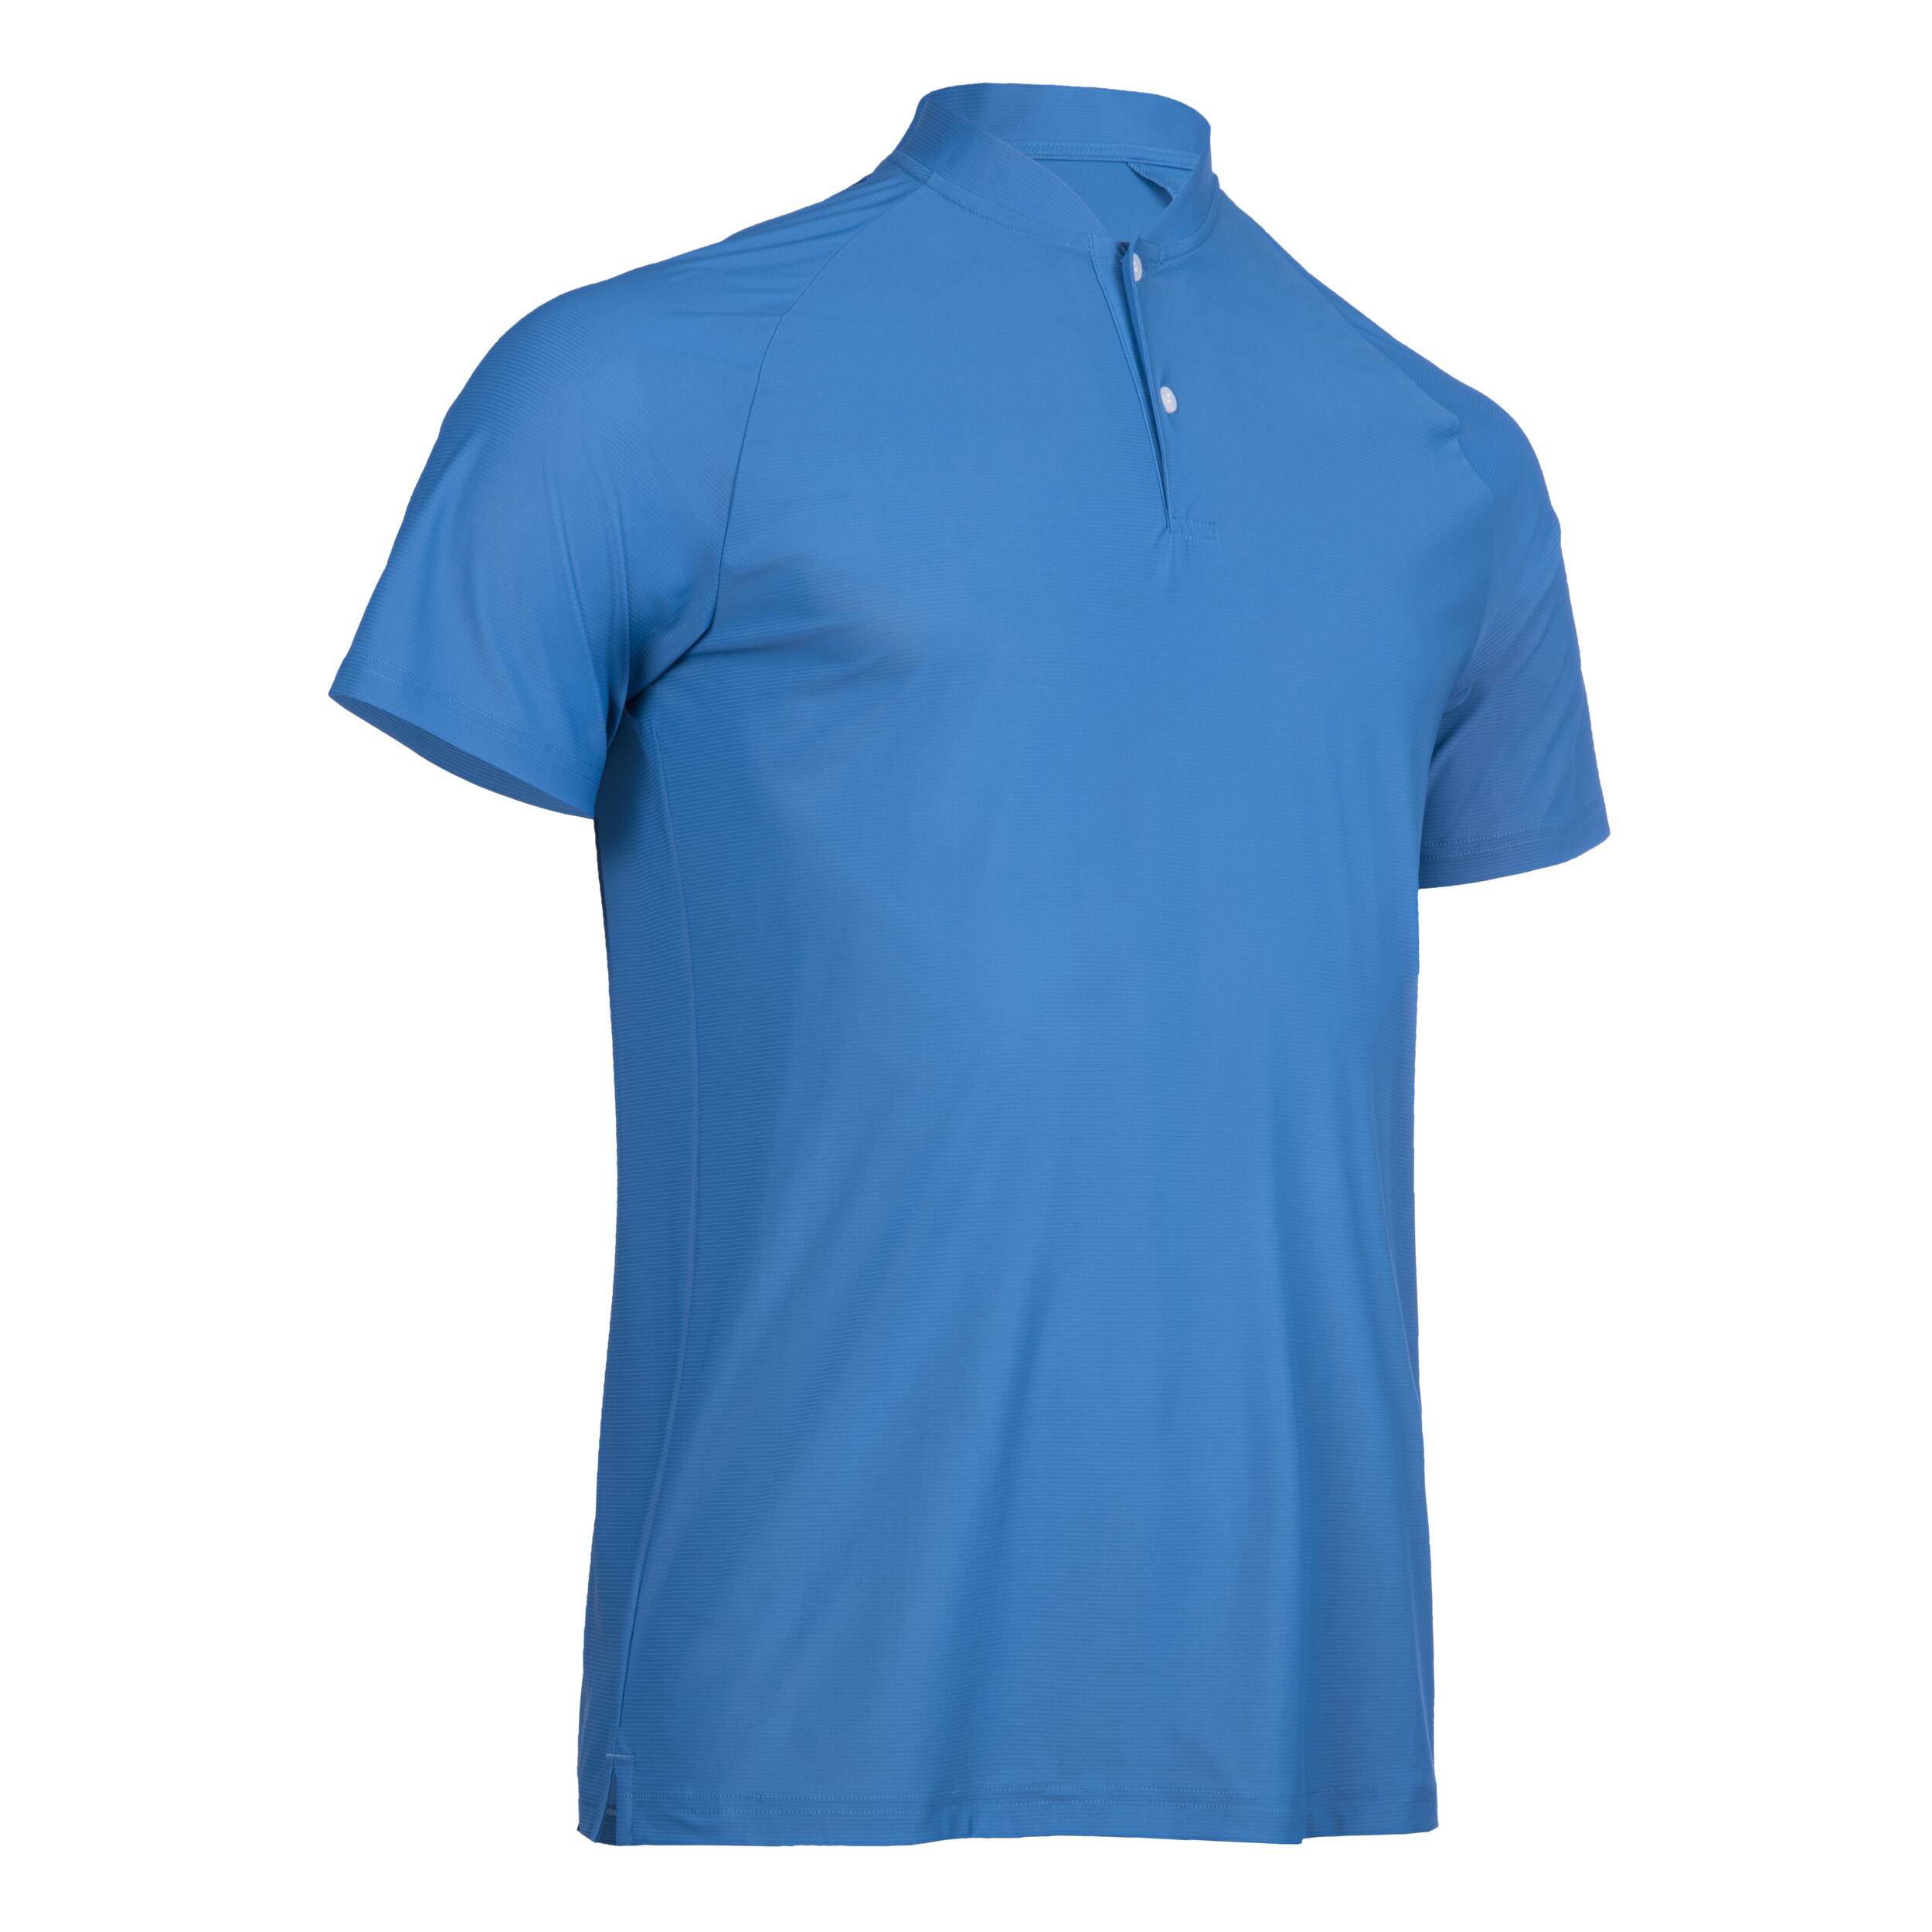 Men's golf short sleeve polo shirt - WW500 blue 8/8